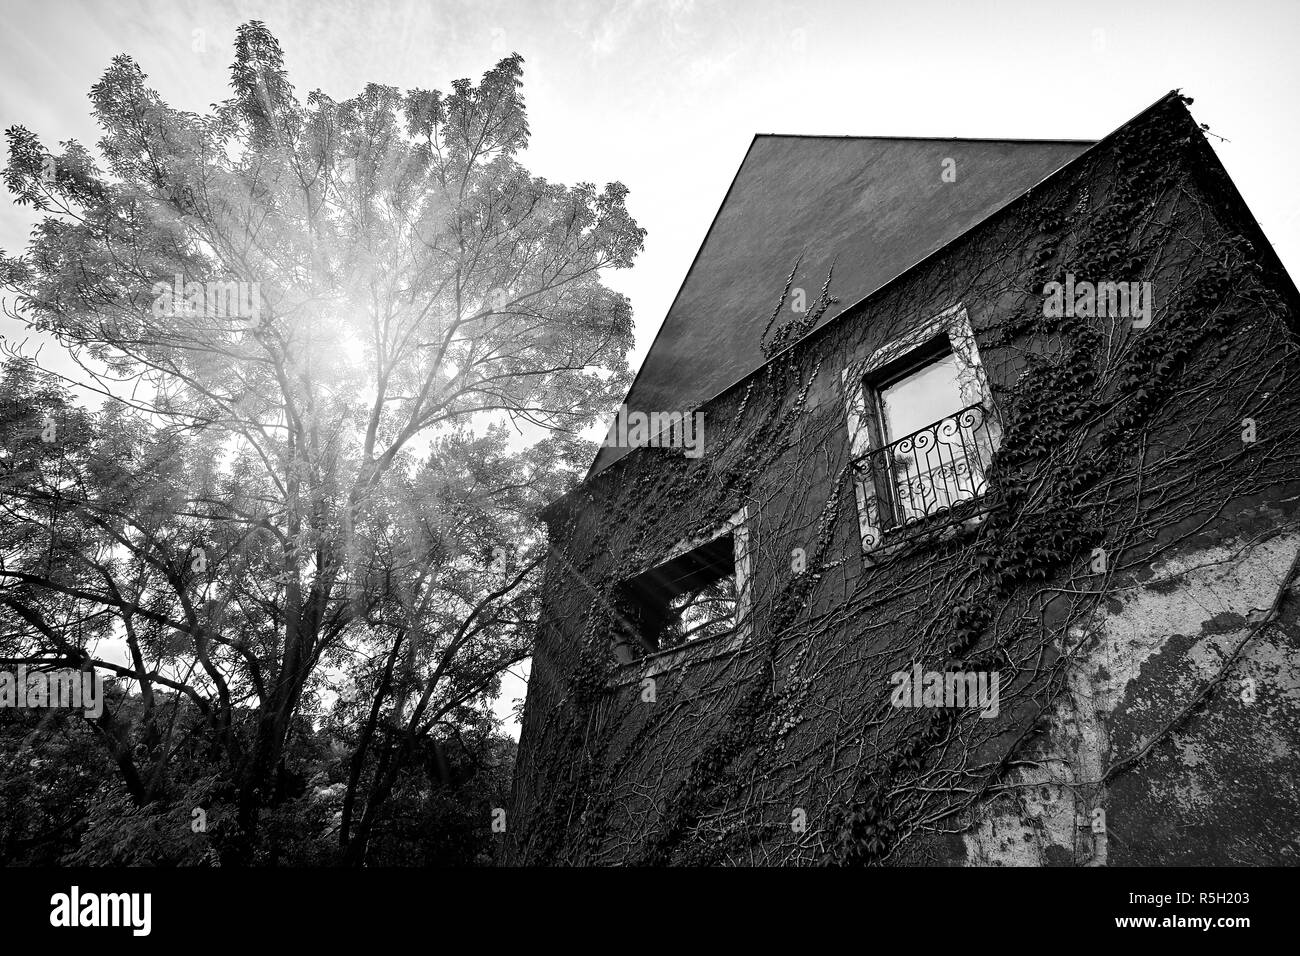 Bella casa con una vista ad albero in Uvoz street della Città Vecchia di Praga vicino alla vigna su una collina a Praga, Repubblica Ceca. In bianco e nero. Foto Stock